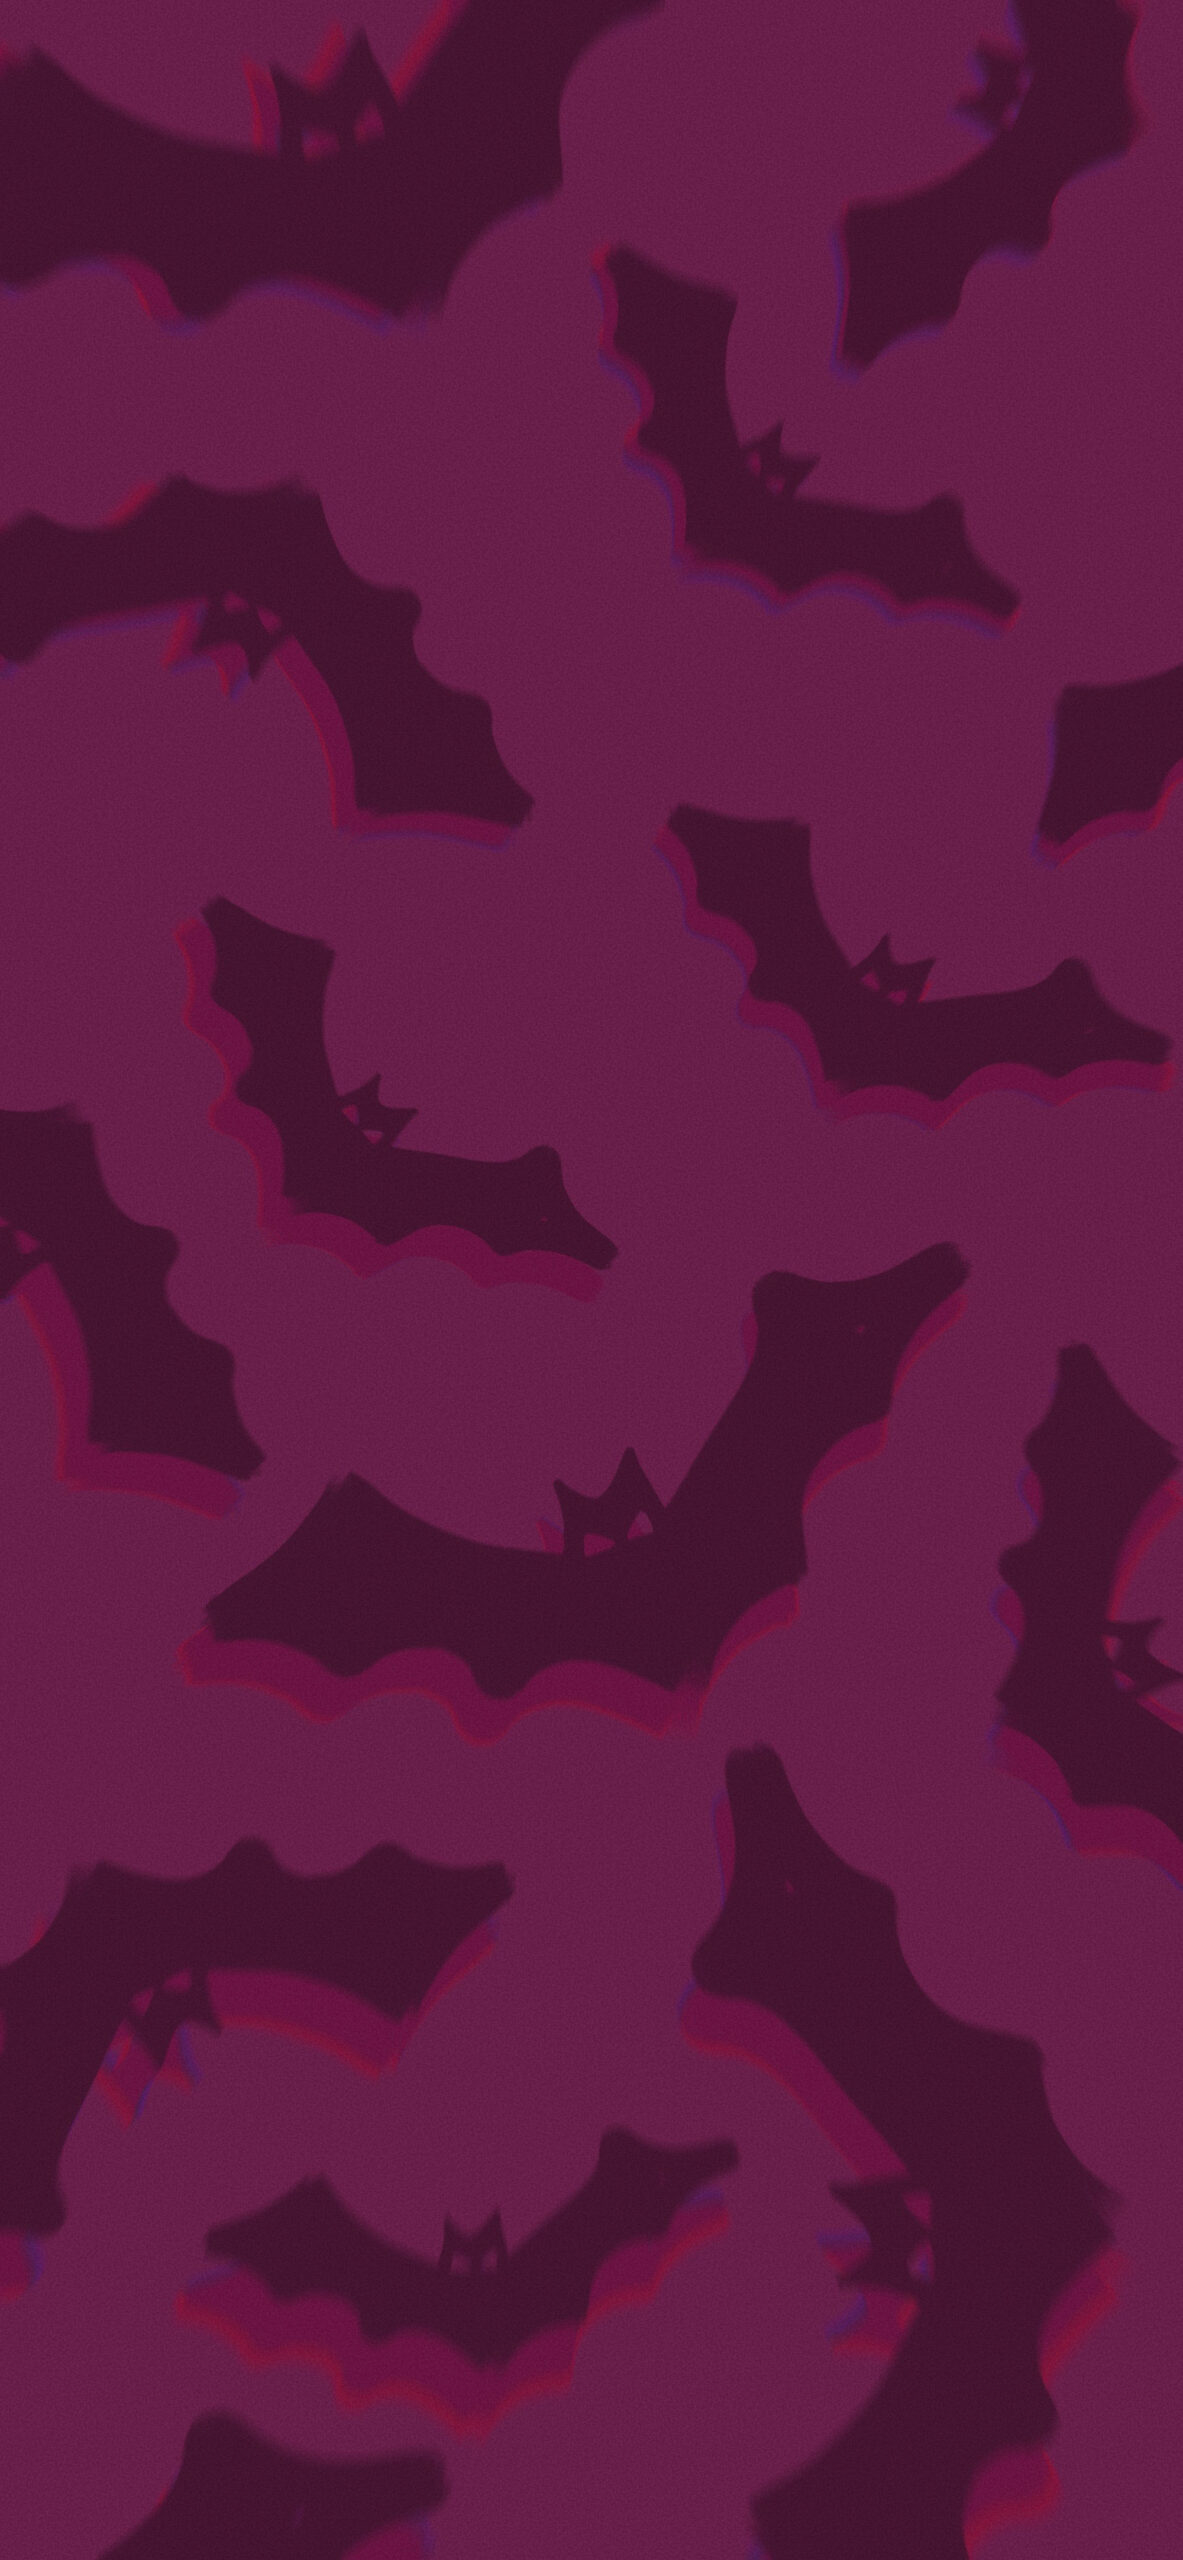 Halloween Bat Wallpapers - Halloween Aesthetic Wallpapers for iPhone